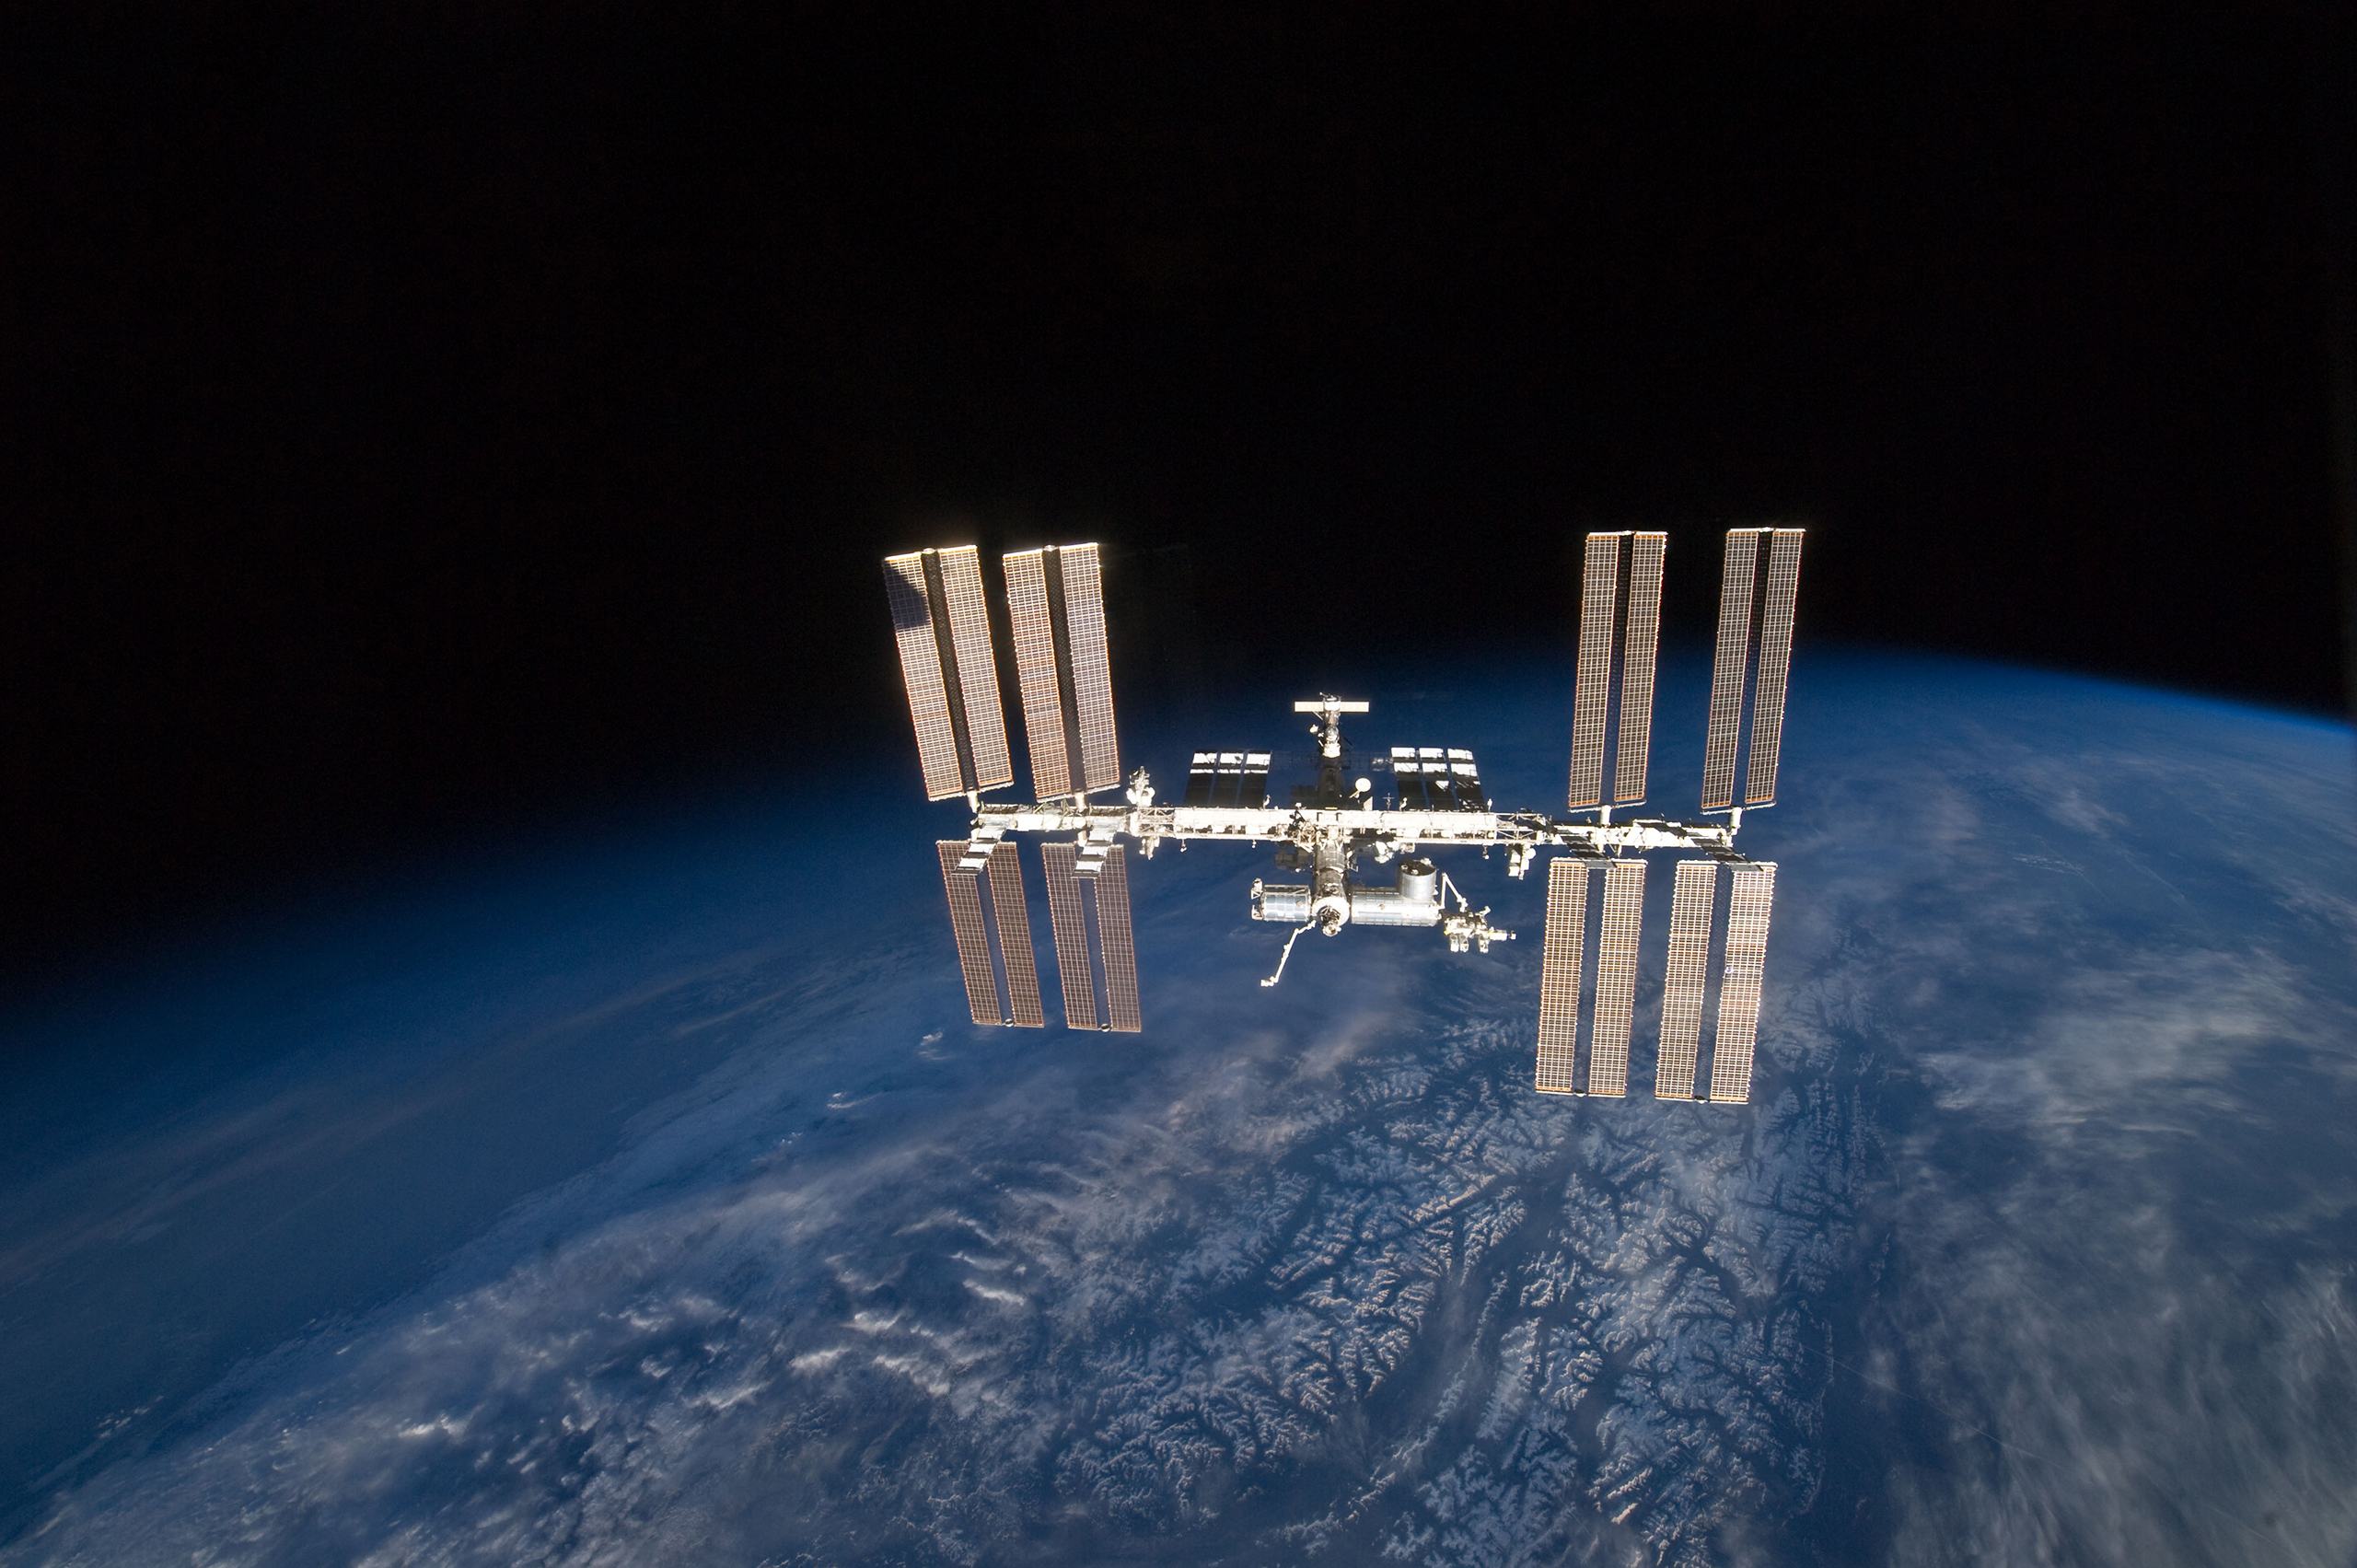 这张照片展示了国际空间站的整体视图，下面是弯曲的蓝色云层覆盖的地球表面。